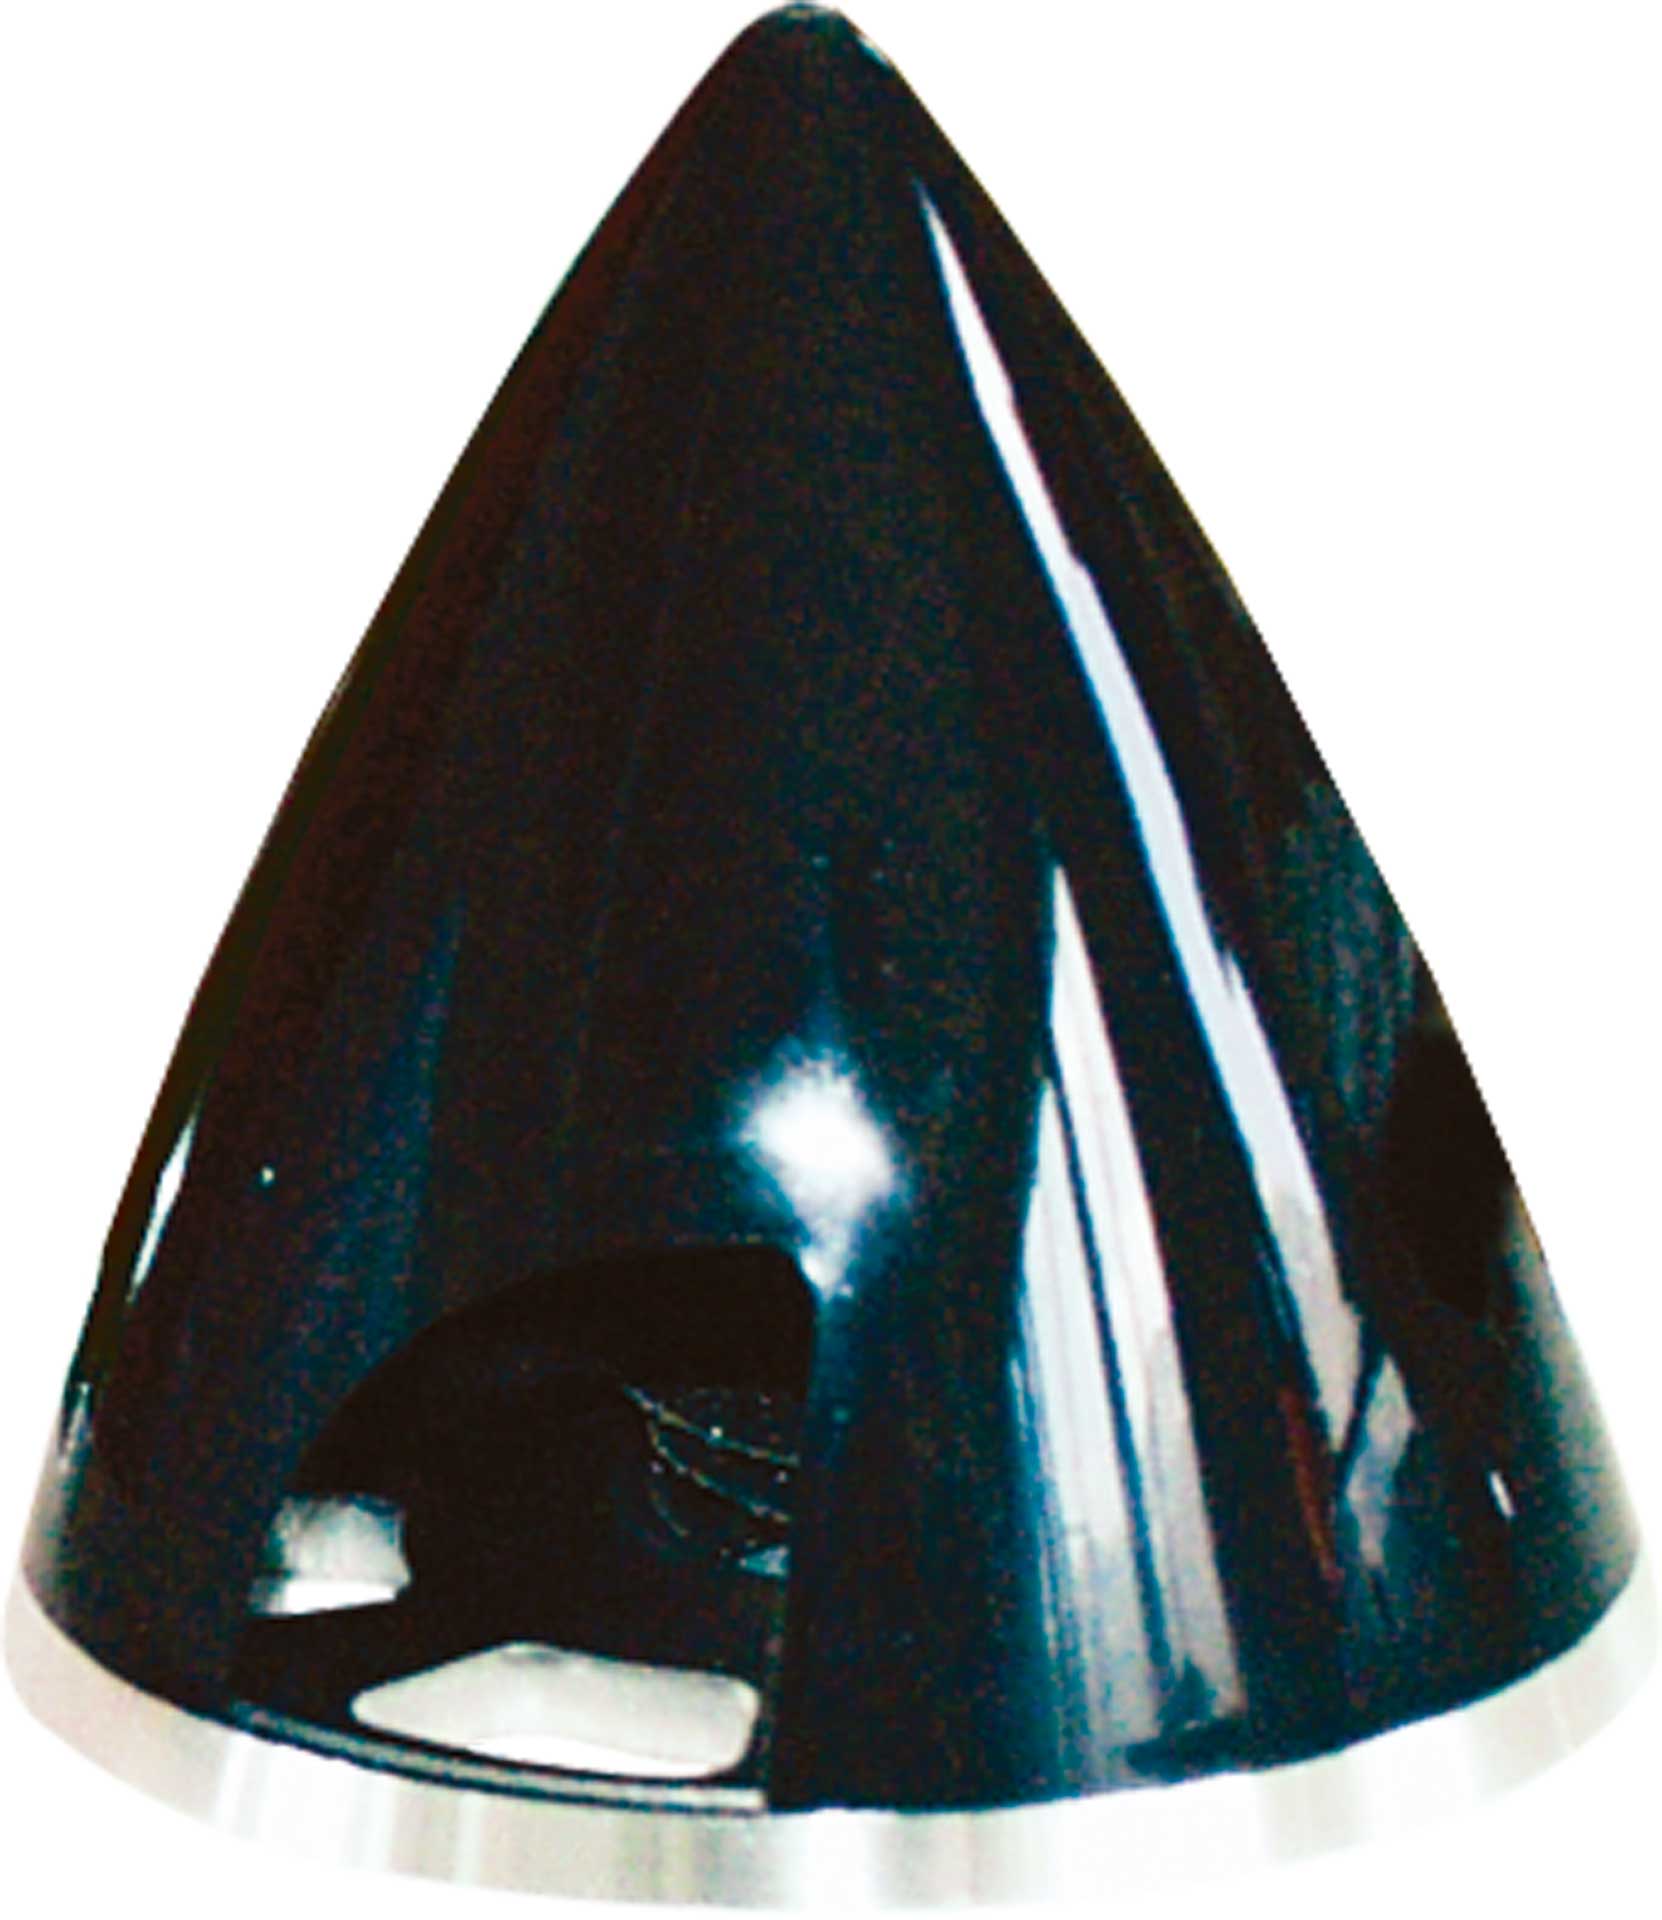 ARK Spinner Profi 45MM black plastic with aluminum base plate